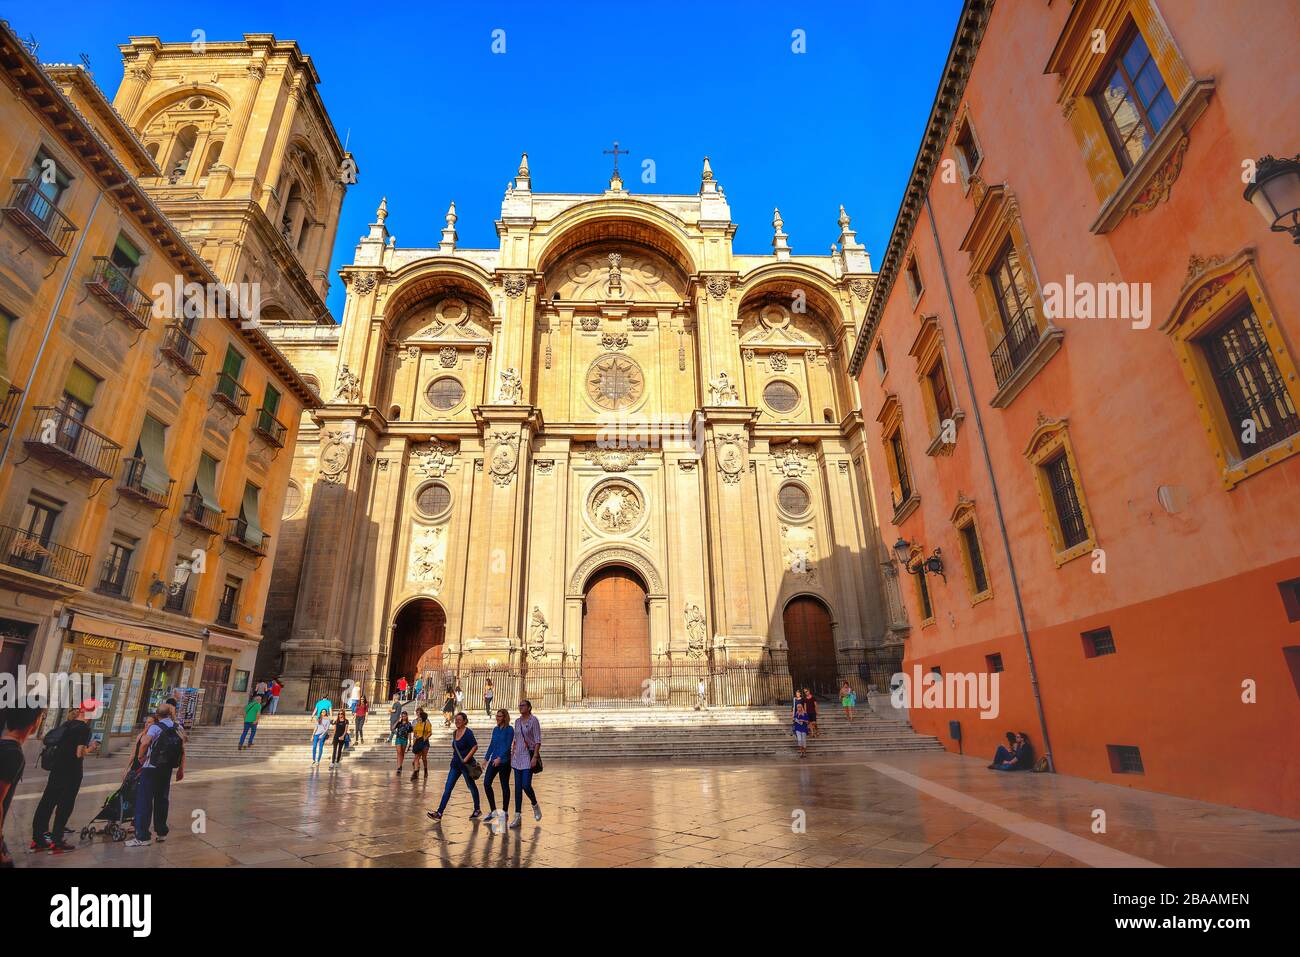 Vue sur la façade principale de la cathédrale de Grenade (cathédrale de l'Incarnation).Granada, Andalousie, Espagne Banque D'Images